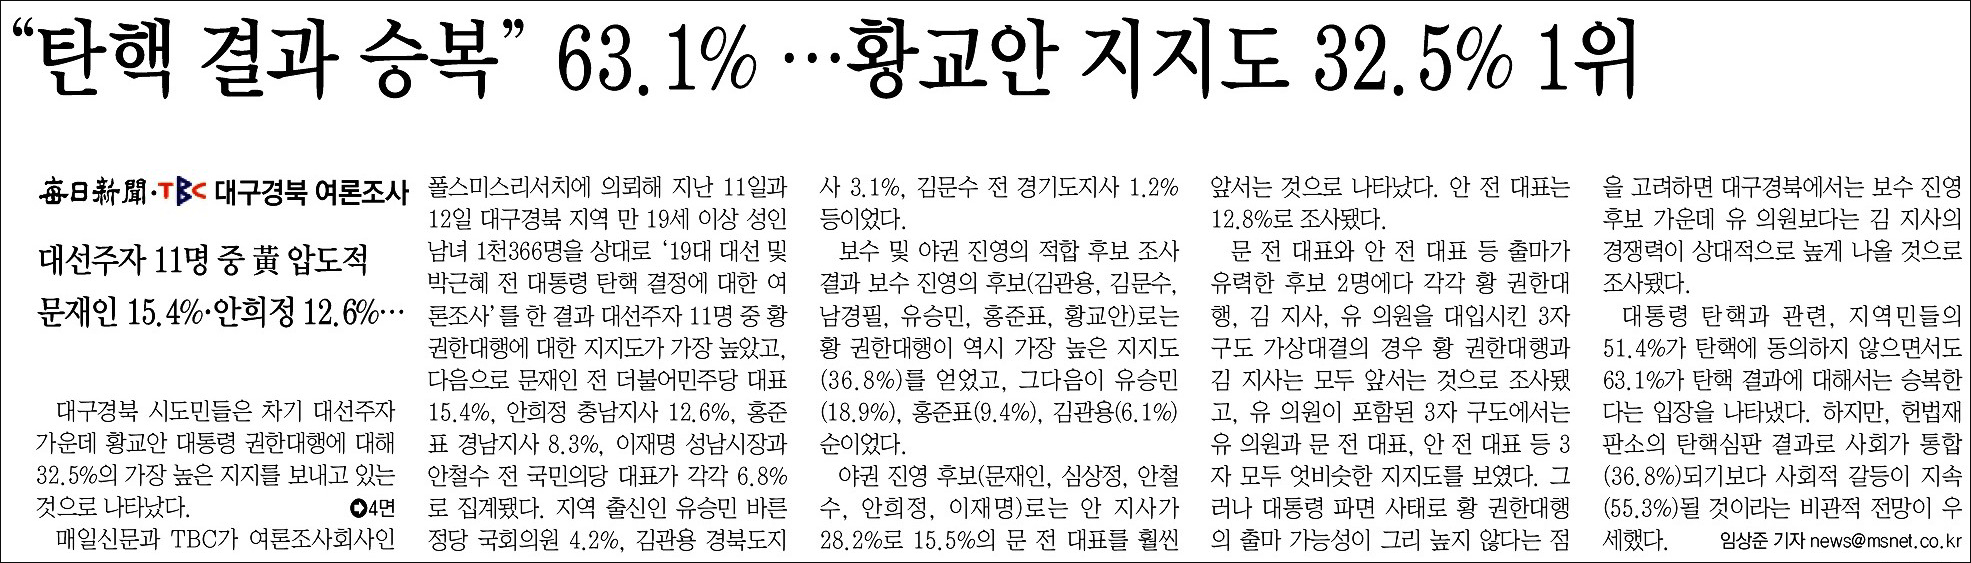 <매일신문> 2017년 3월 13일자 1면